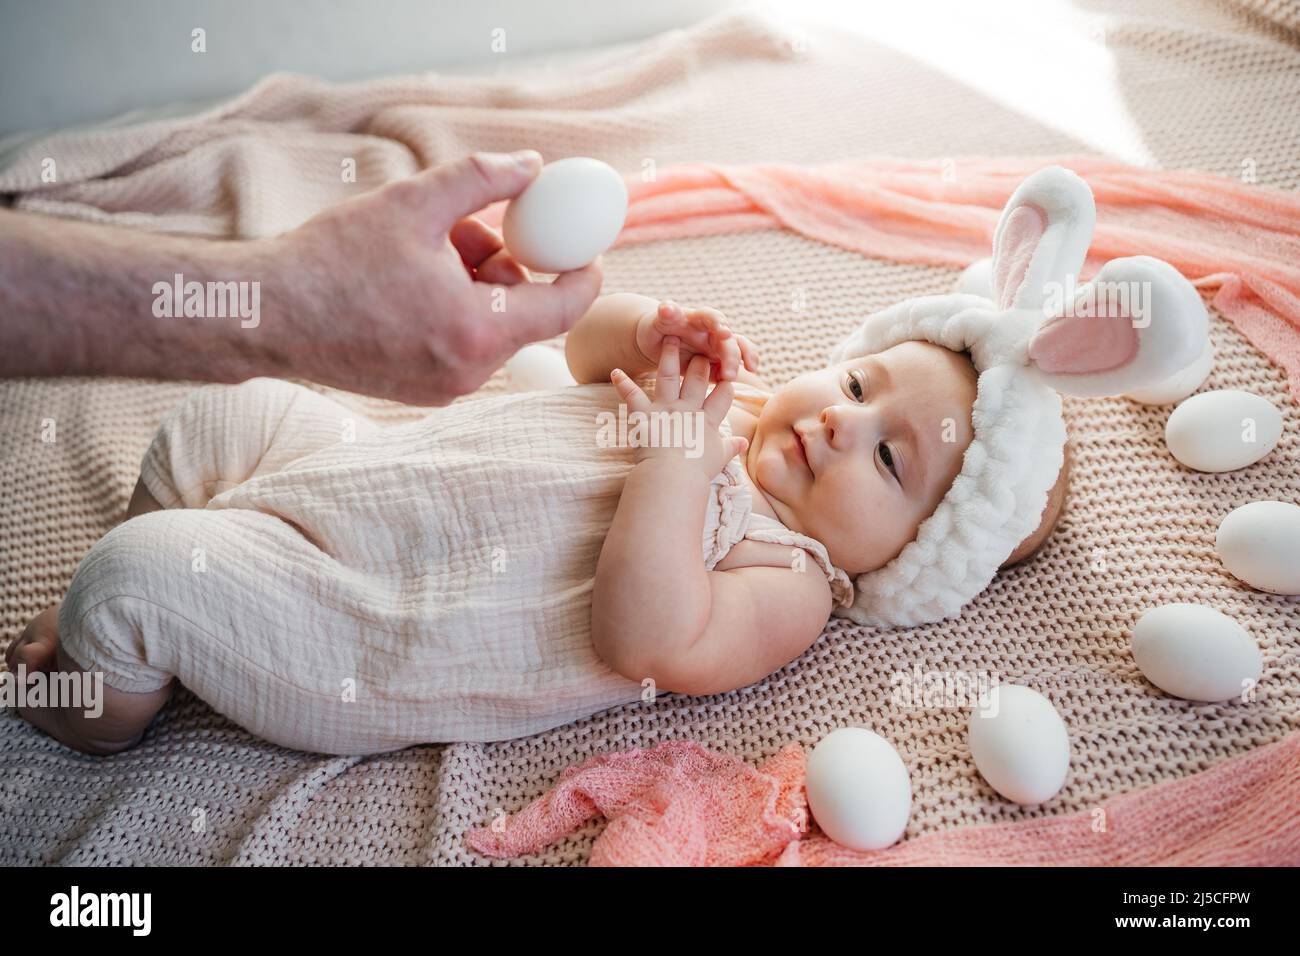 conejo disfraz bebe fotografía de recién nacido conejito disfraz para bebe  niña newborn photography props suave